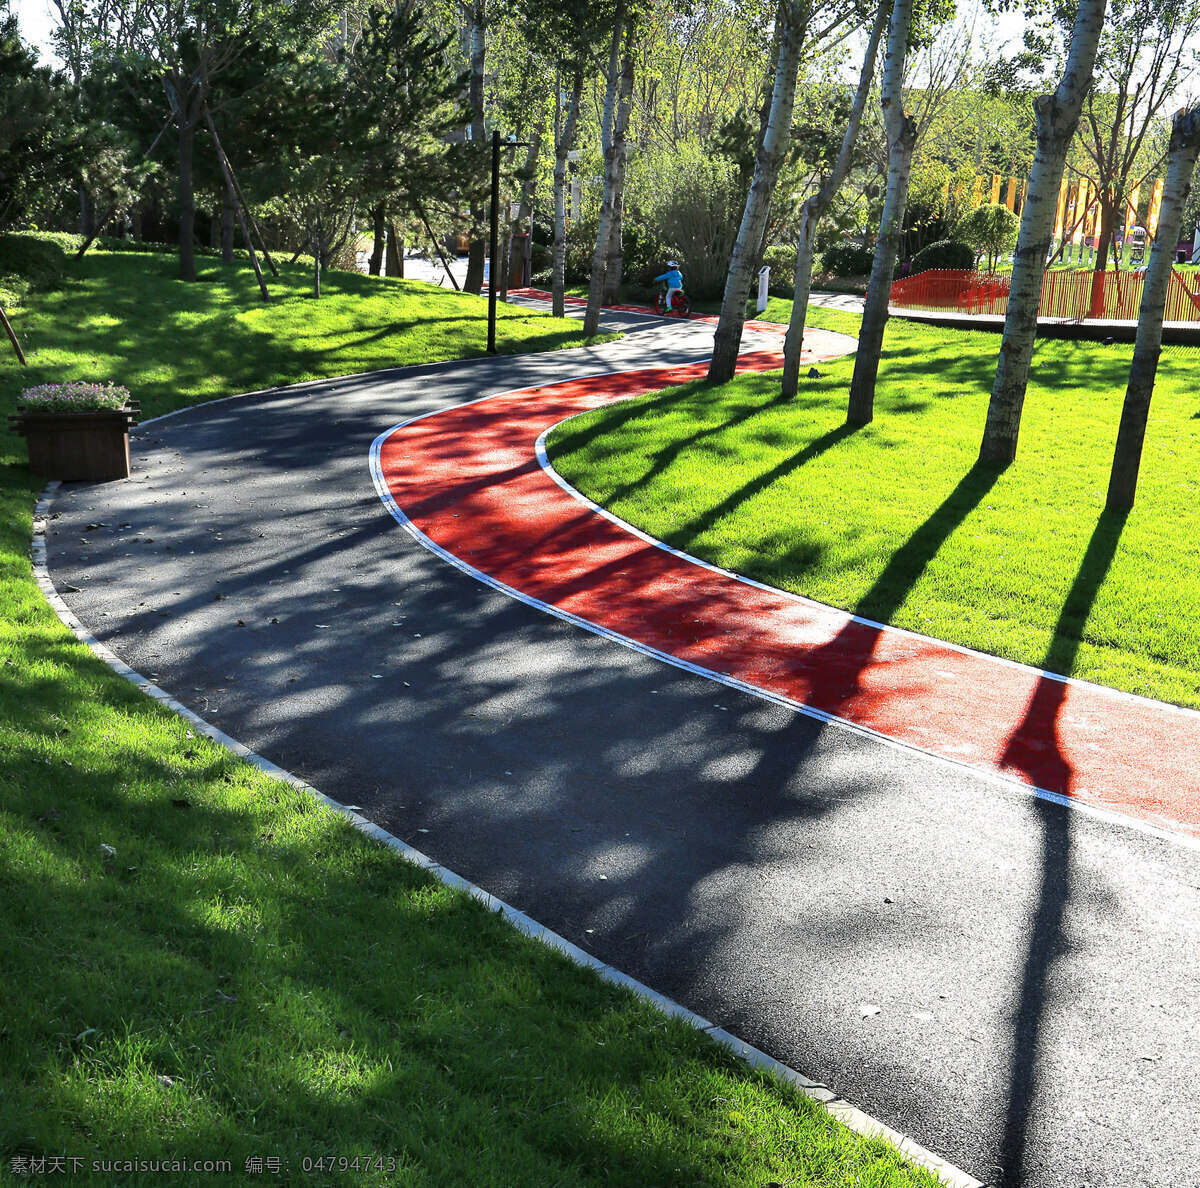 社区配套公园 跑道 运动 公园 绿地 健身 自然风景 自然景观 建筑景观